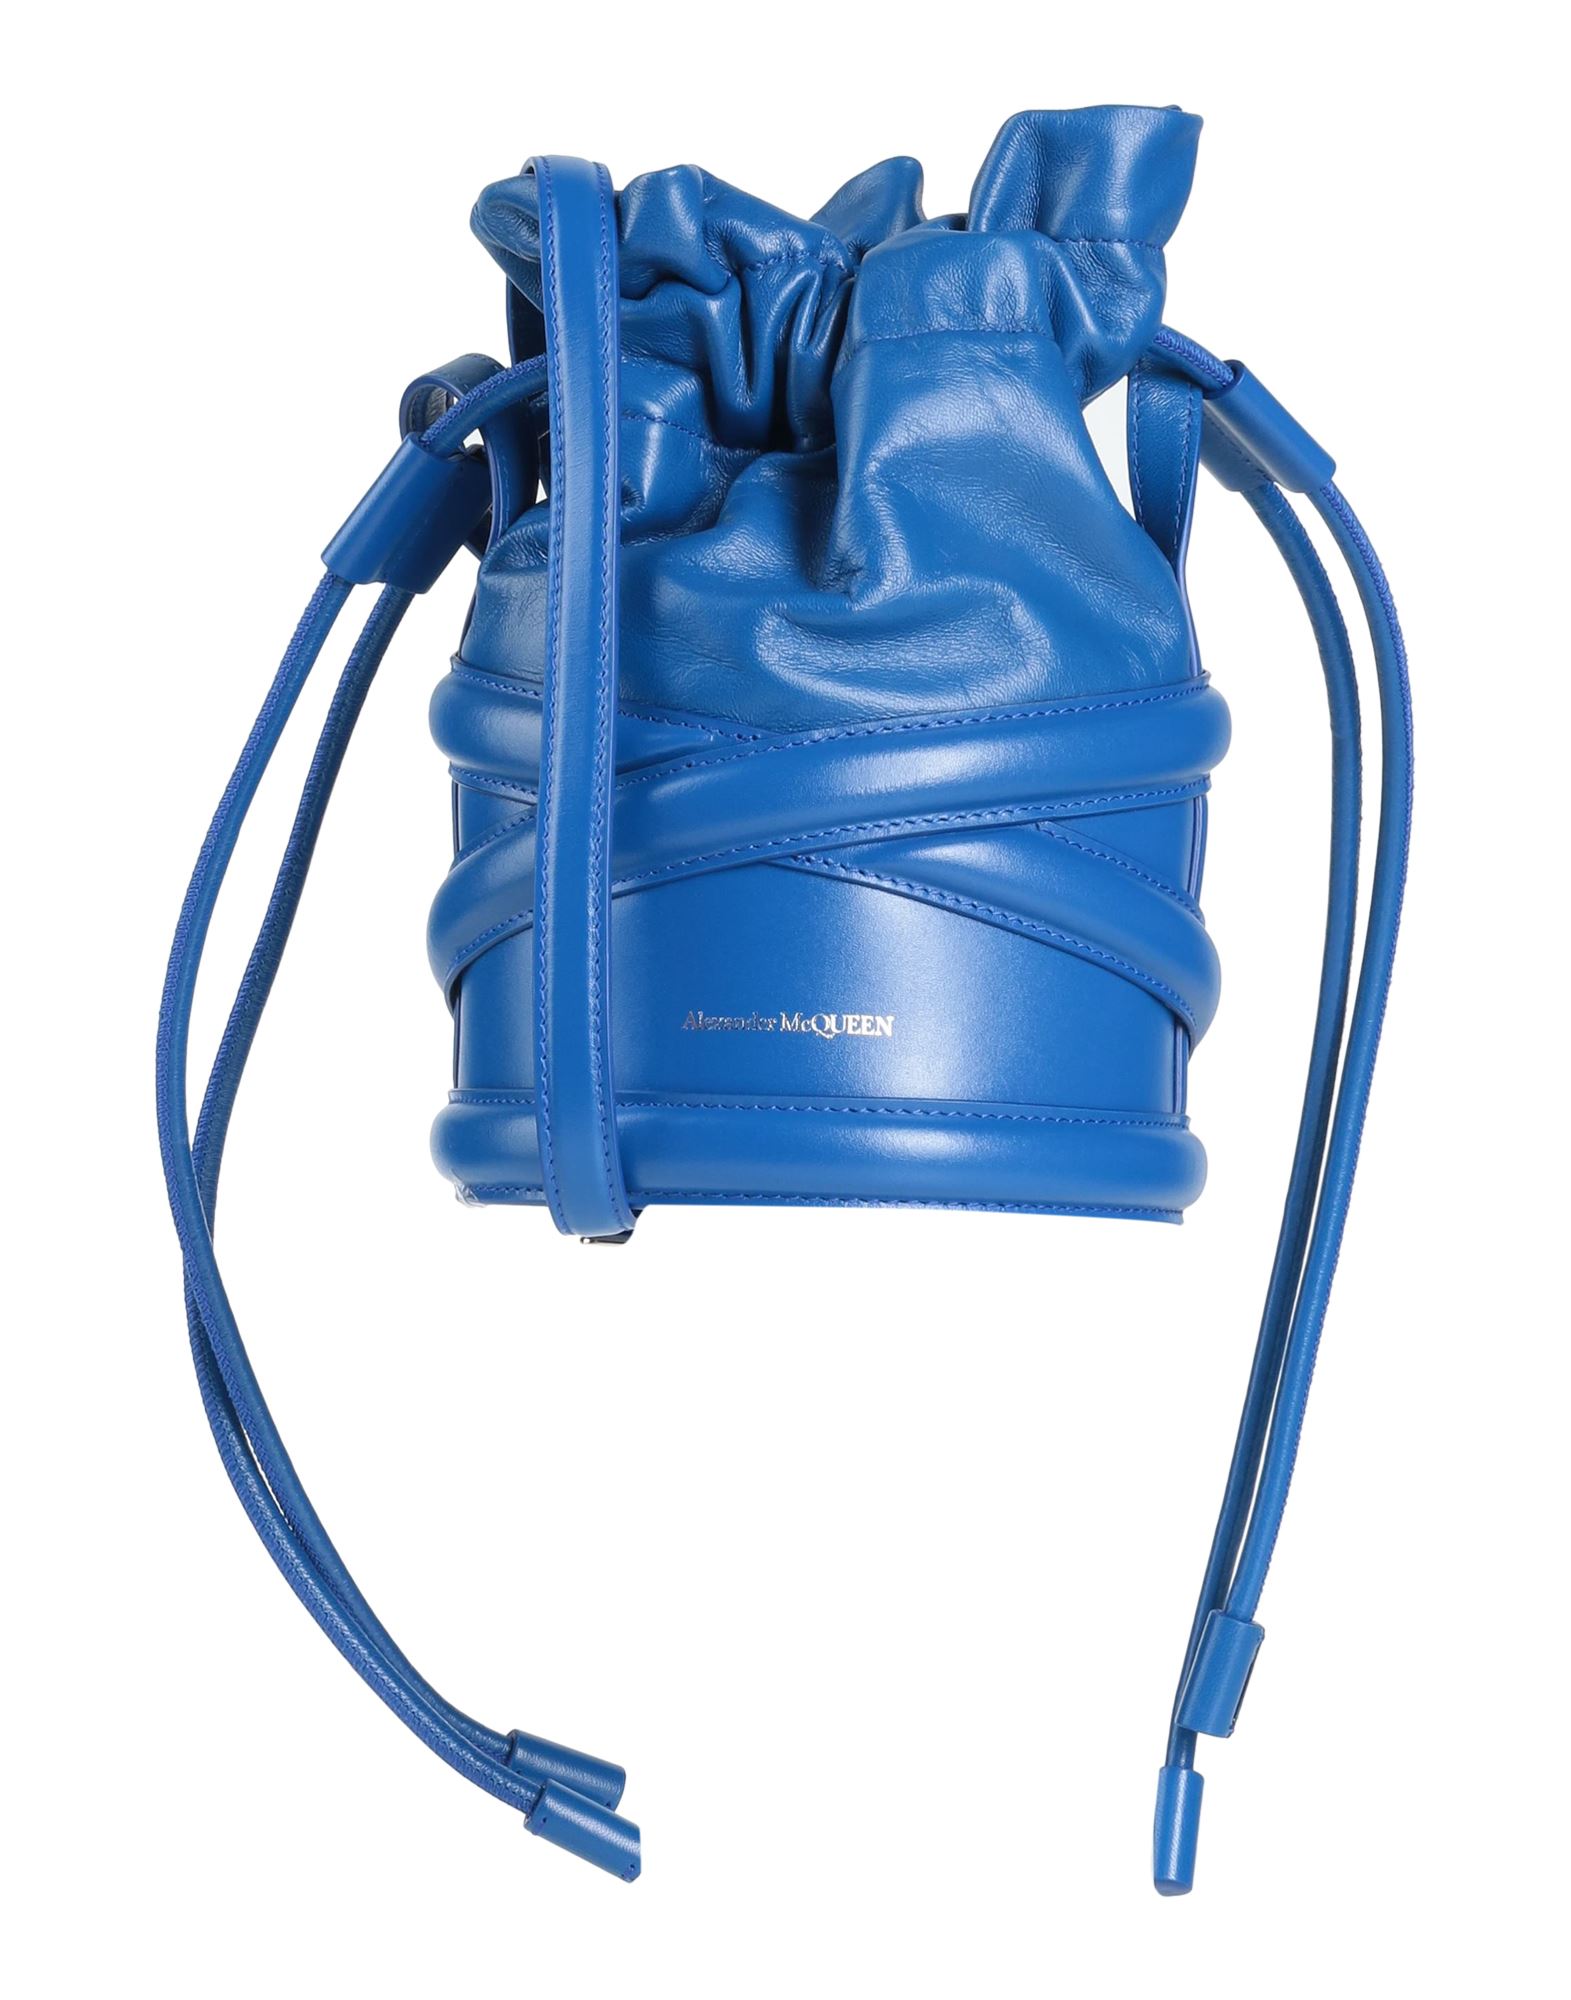 Alexander Mcqueen Handbags In Blue